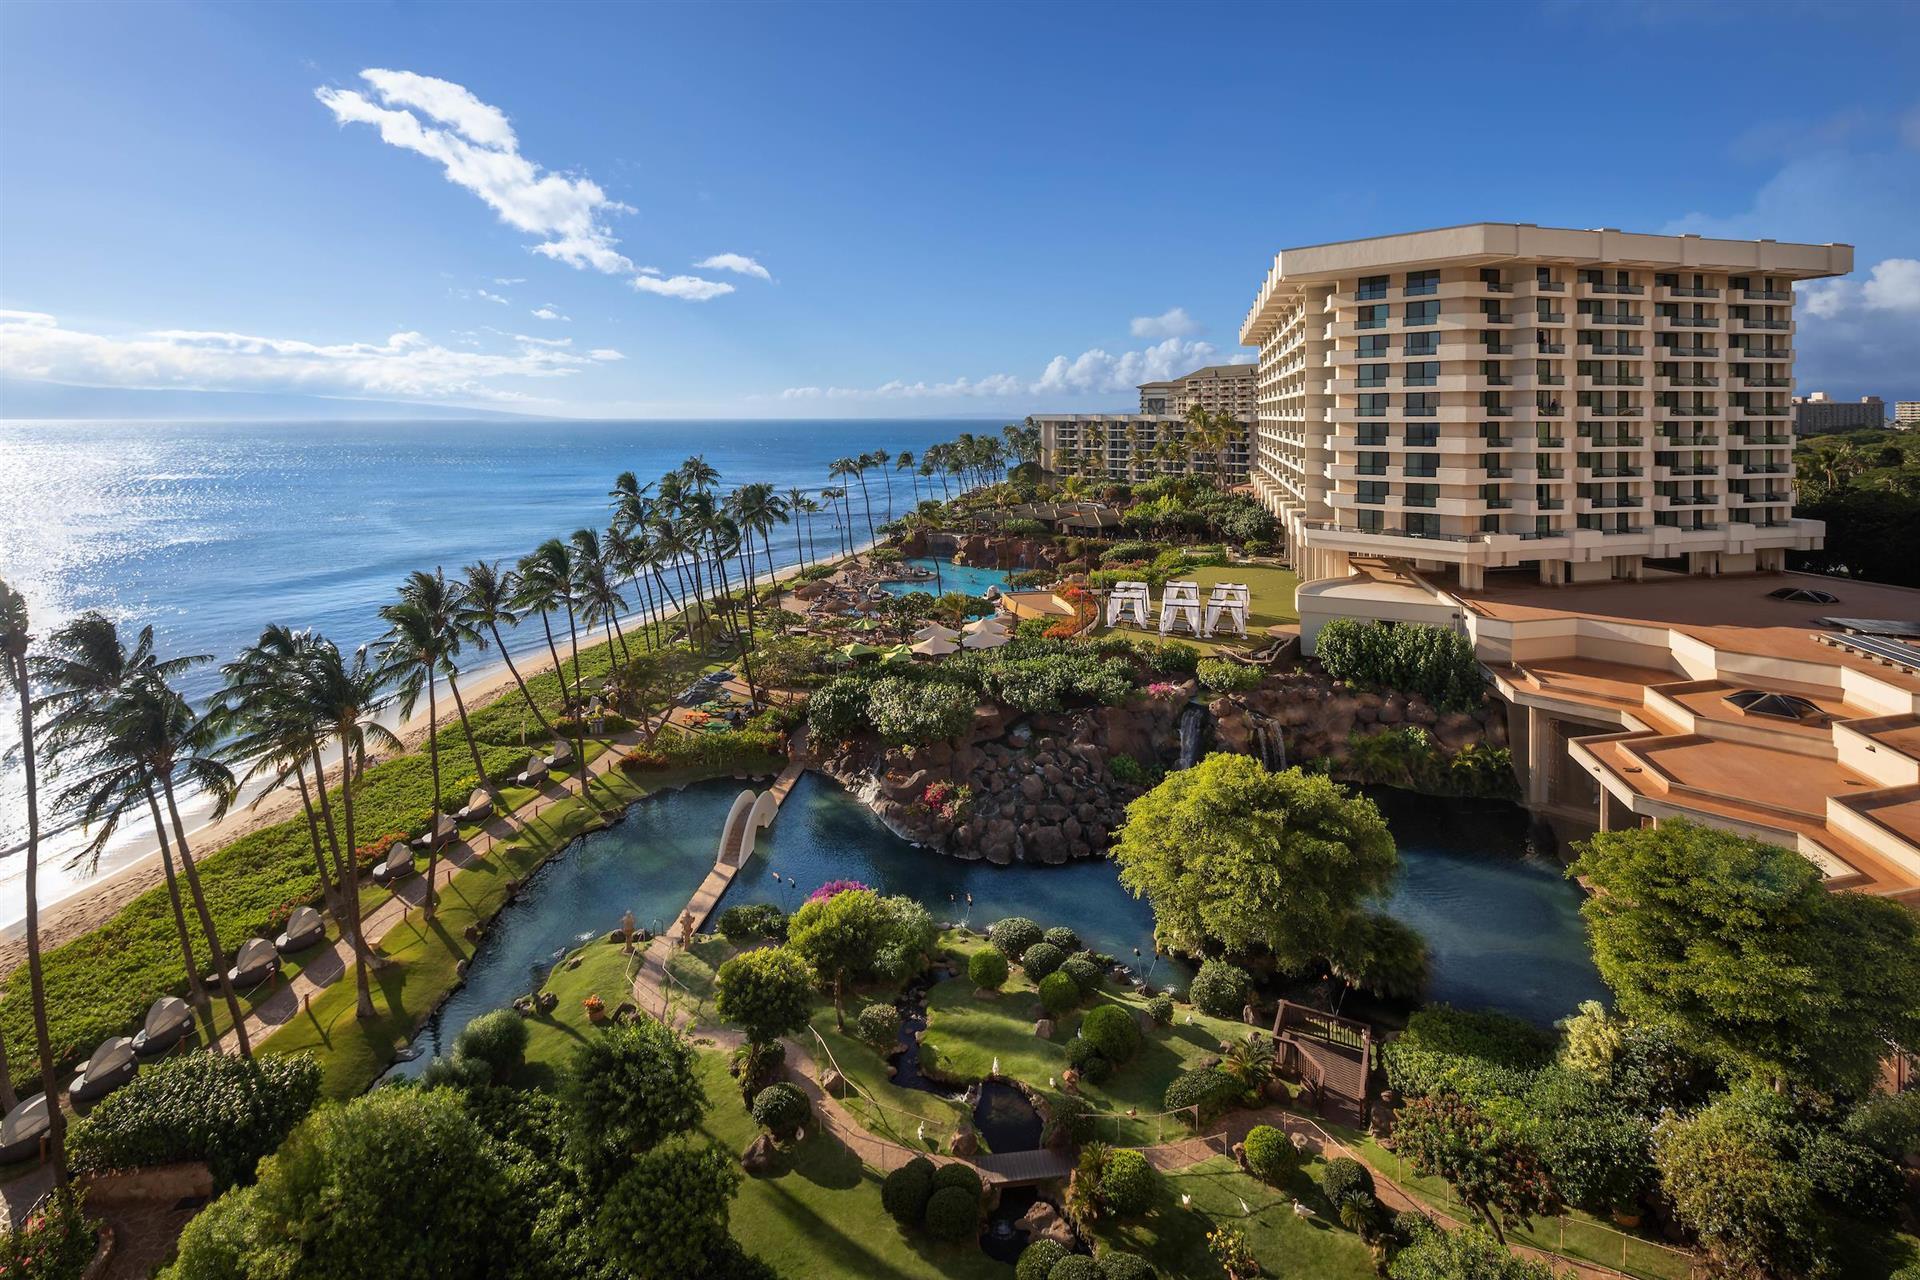 Hyatt Regency Maui Resort and Spa in Maui, HI